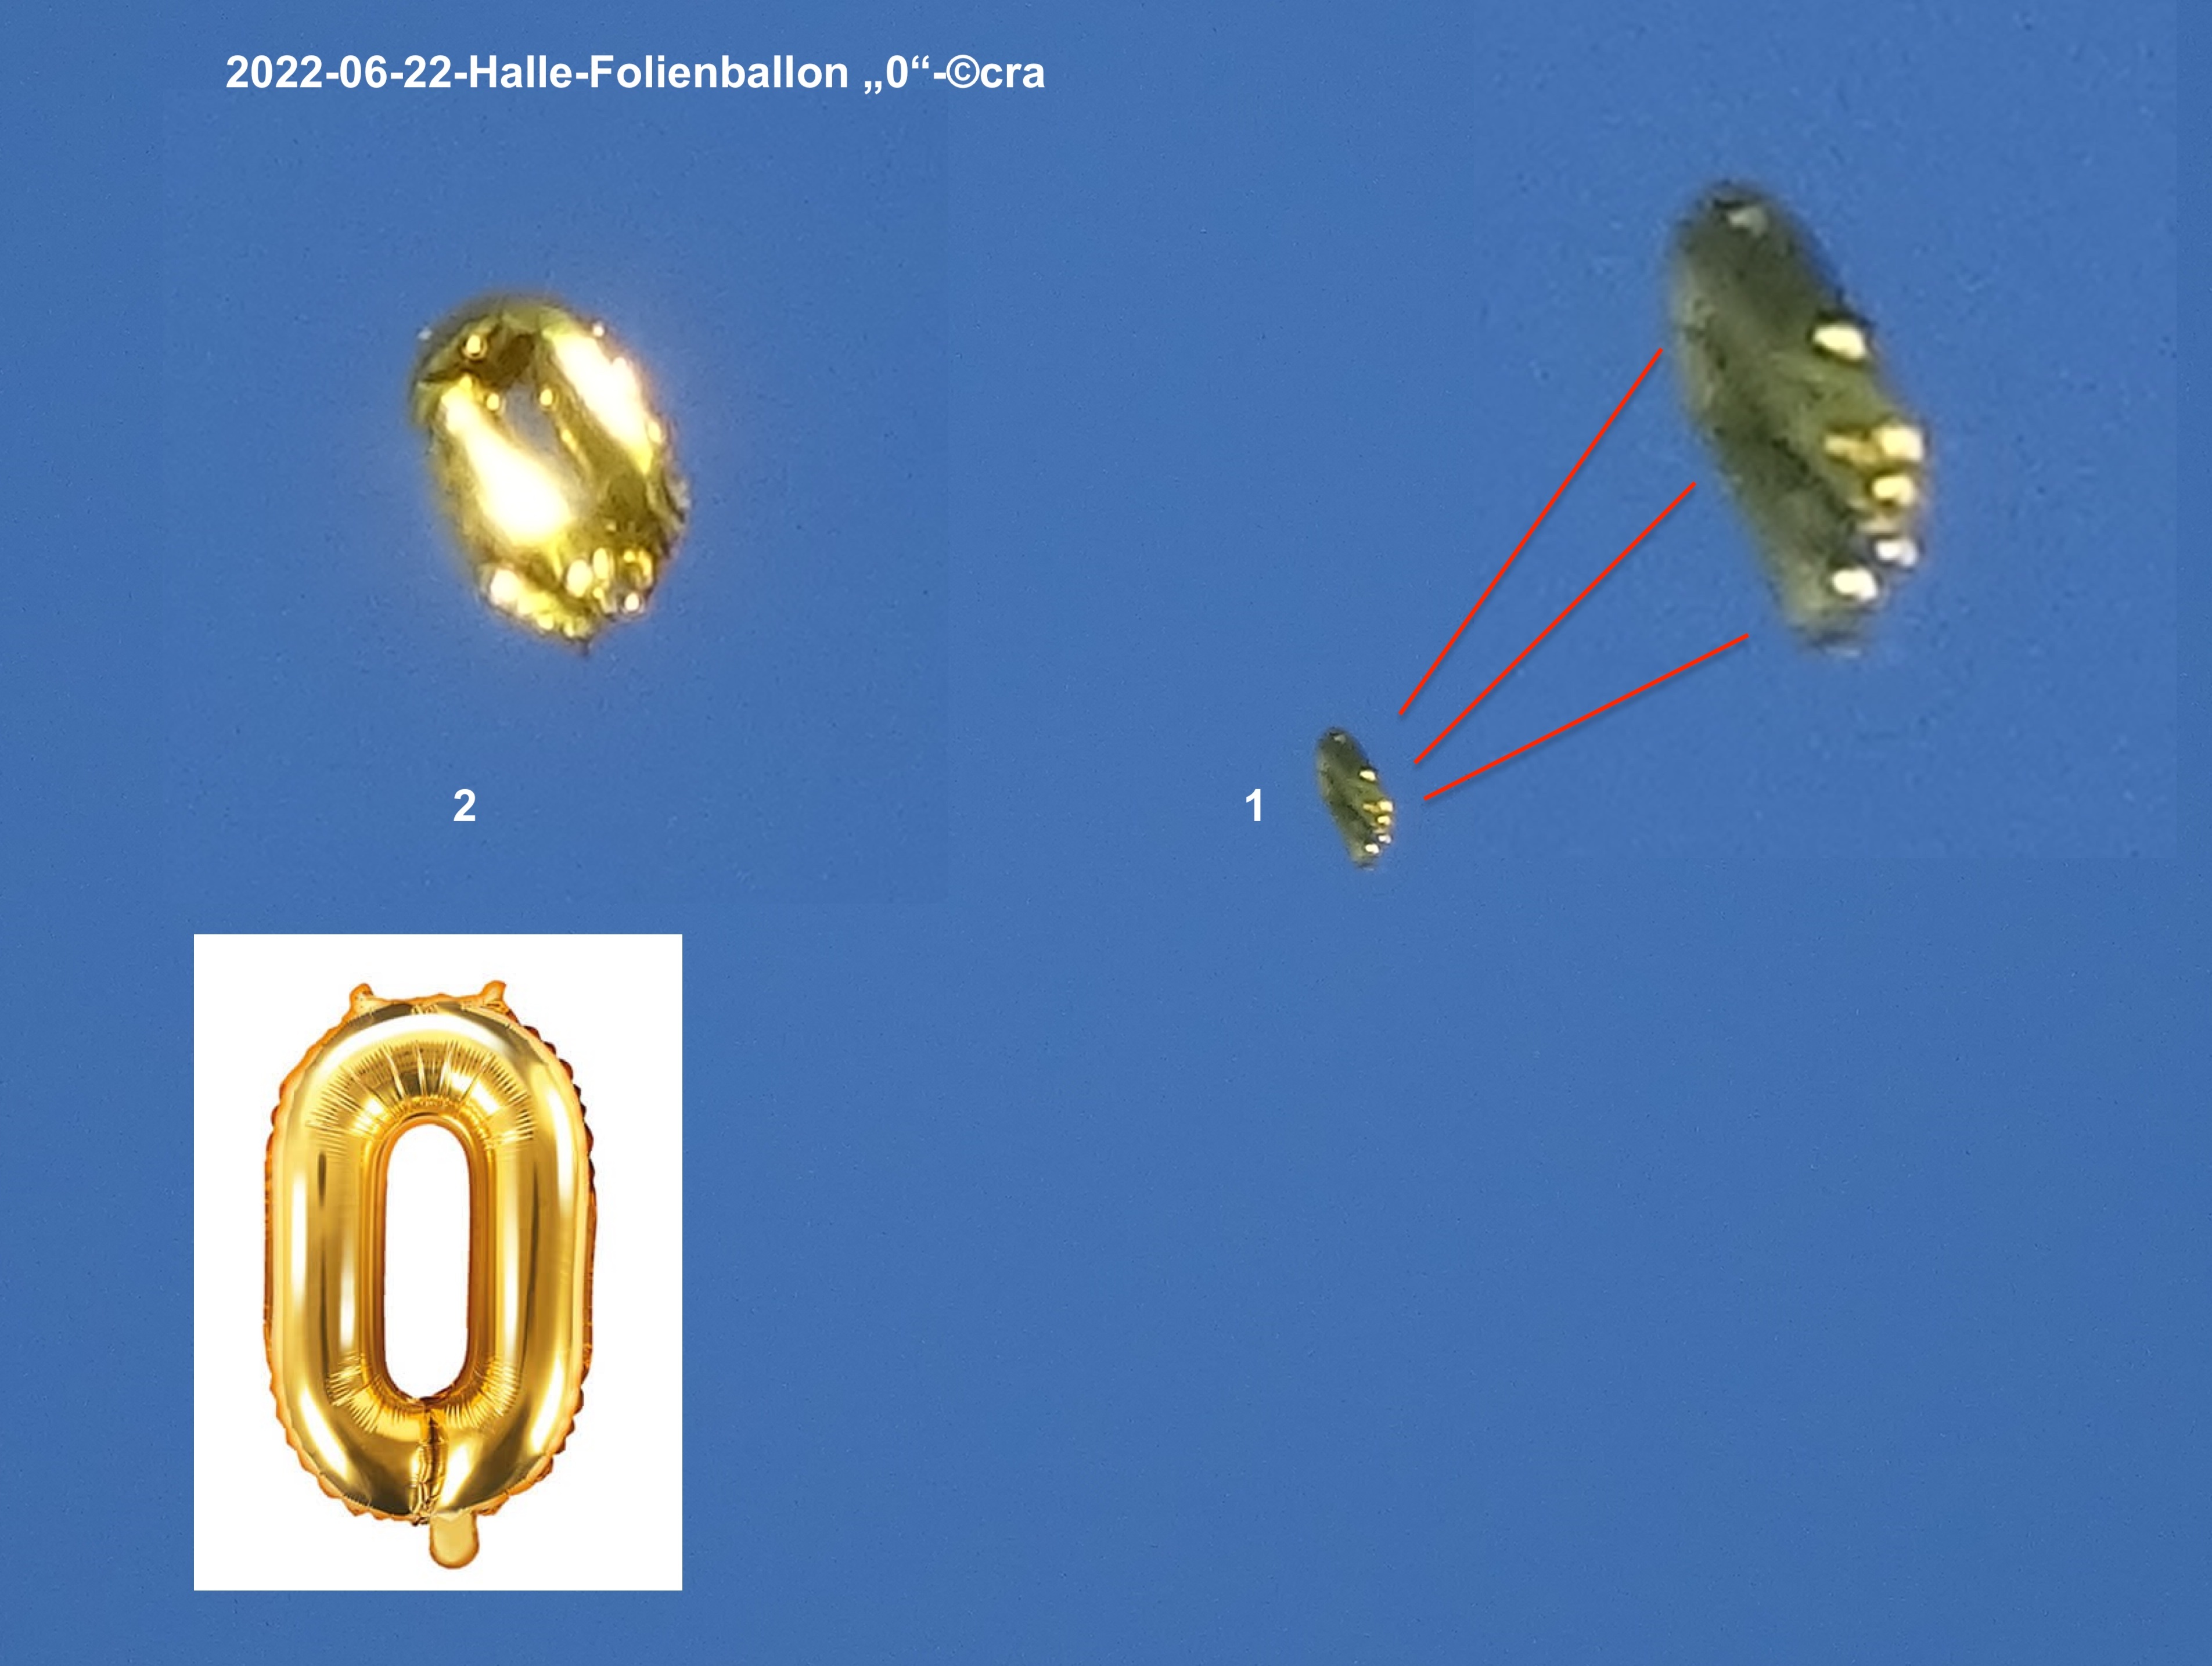 2022-06-22-halle-folienballon